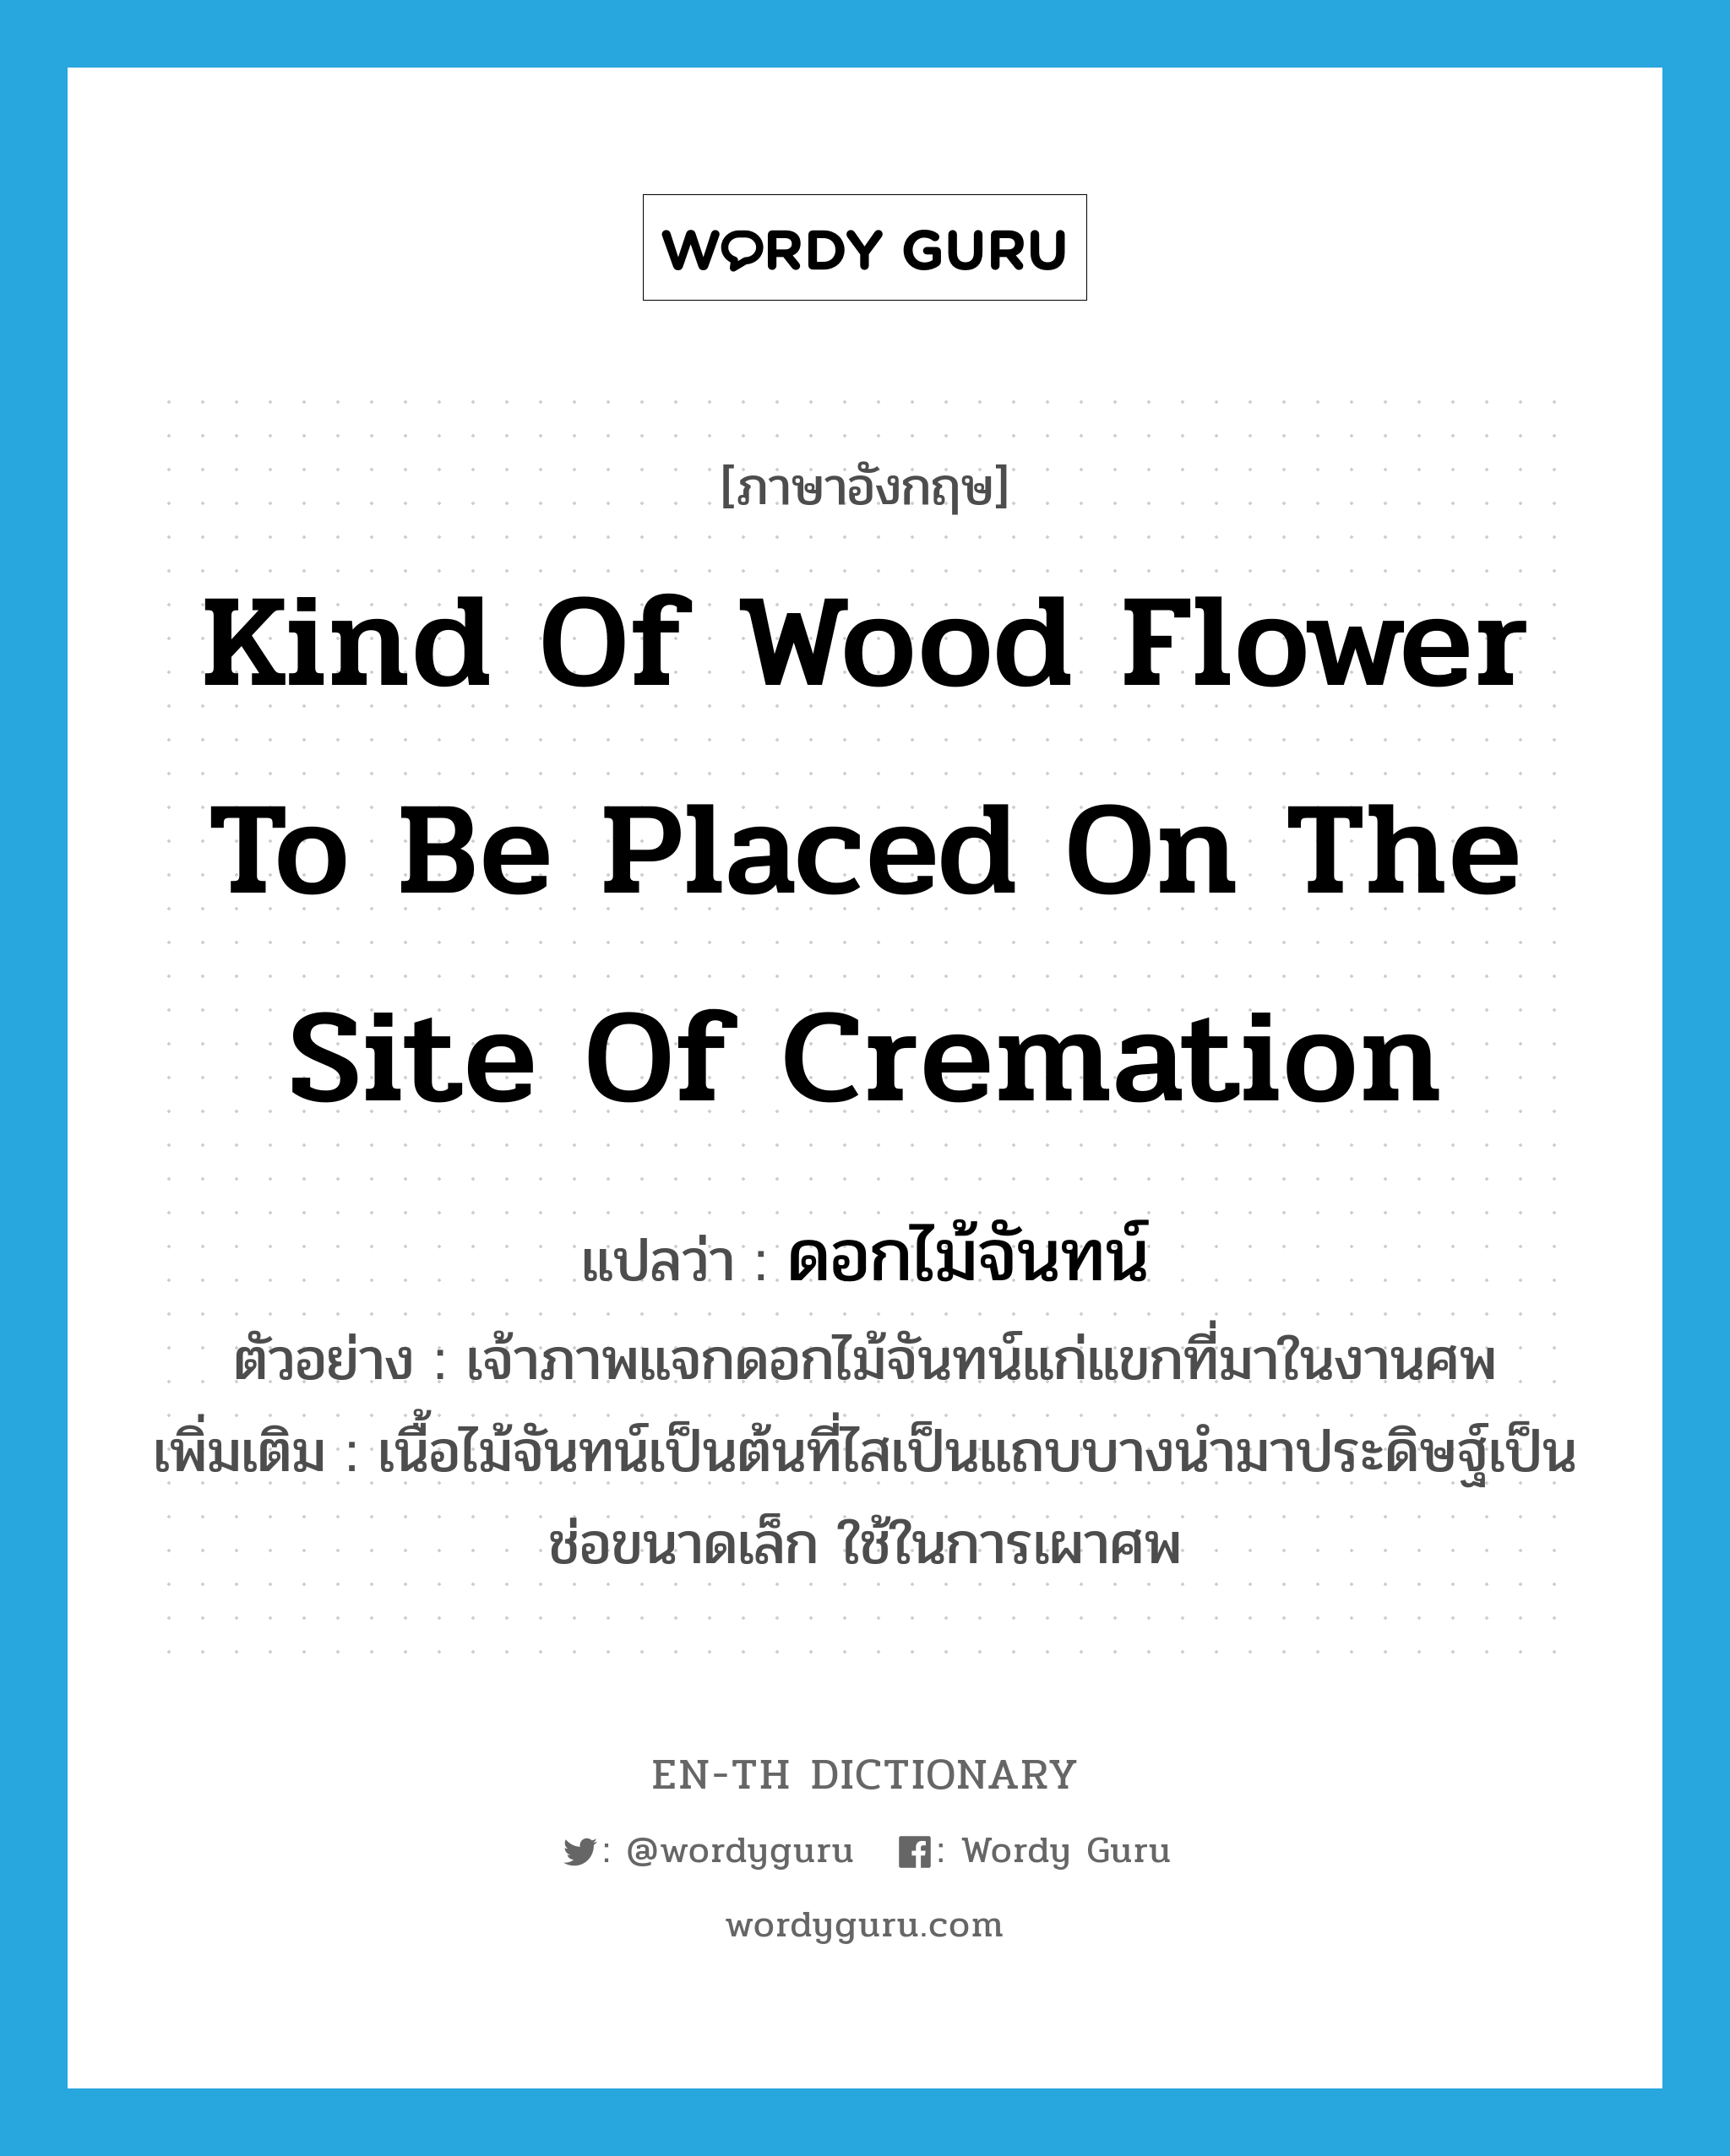 kind of wood flower to be placed on the site of cremation แปลว่า?, คำศัพท์ภาษาอังกฤษ kind of wood flower to be placed on the site of cremation แปลว่า ดอกไม้จันทน์ ประเภท N ตัวอย่าง เจ้าภาพแจกดอกไม้จันทน์แก่แขกที่มาในงานศพ เพิ่มเติม เนื้อไม้จันทน์เป็นต้นที่ไสเป็นแถบบางนำมาประดิษฐ์เป็นช่อขนาดเล็ก ใช้ในการเผาศพ หมวด N